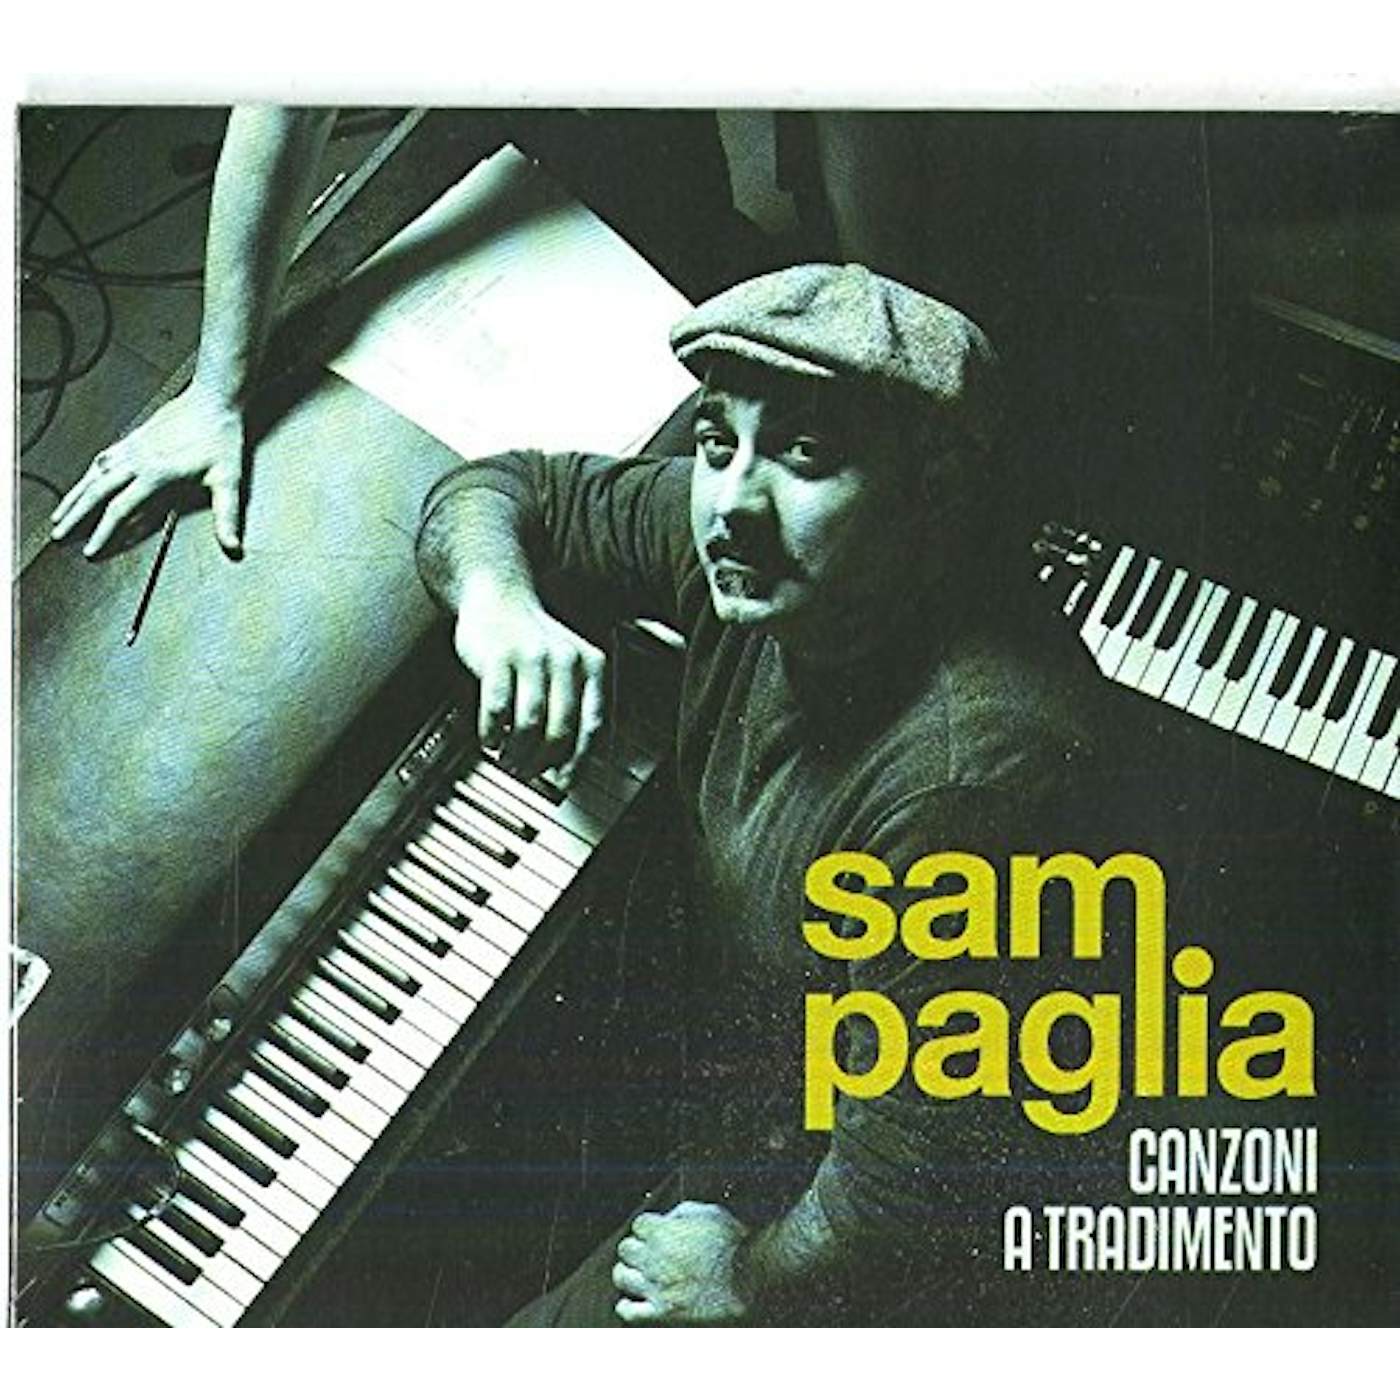 Sam Paglia CANZONI A TRADIMENTO CD